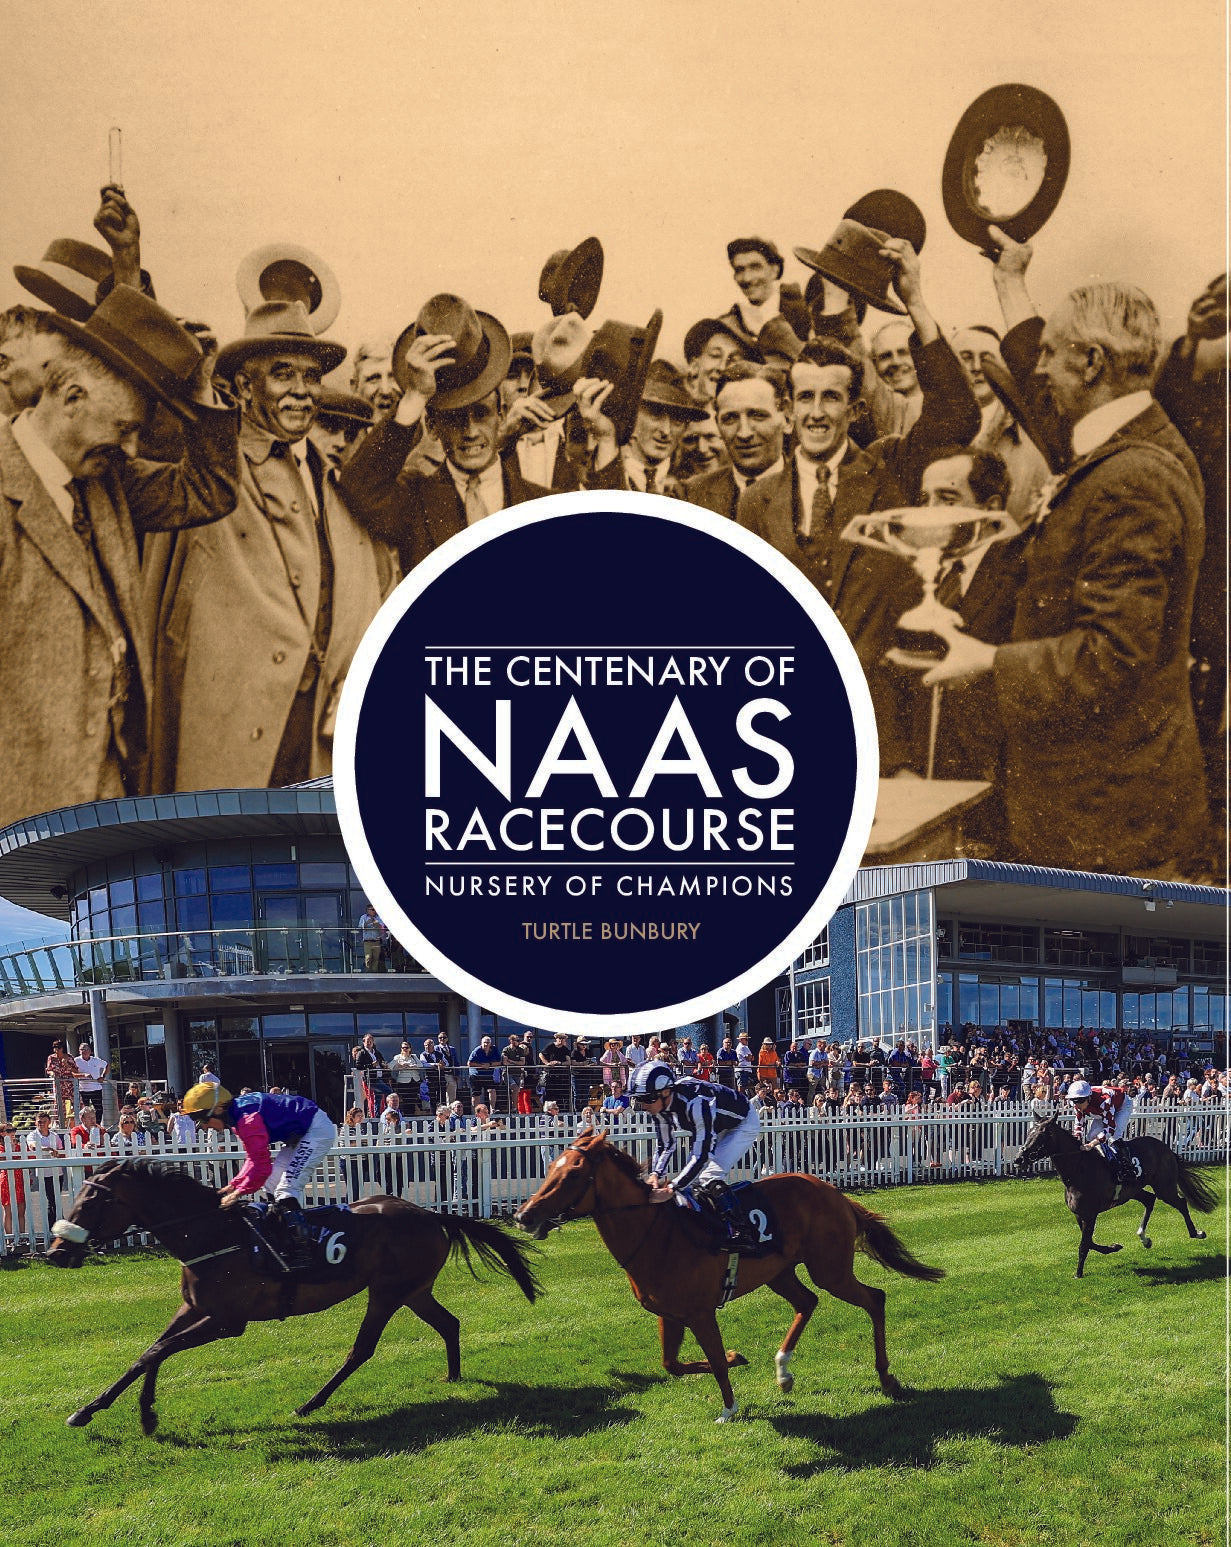 The Centenary of Naas Racecourse